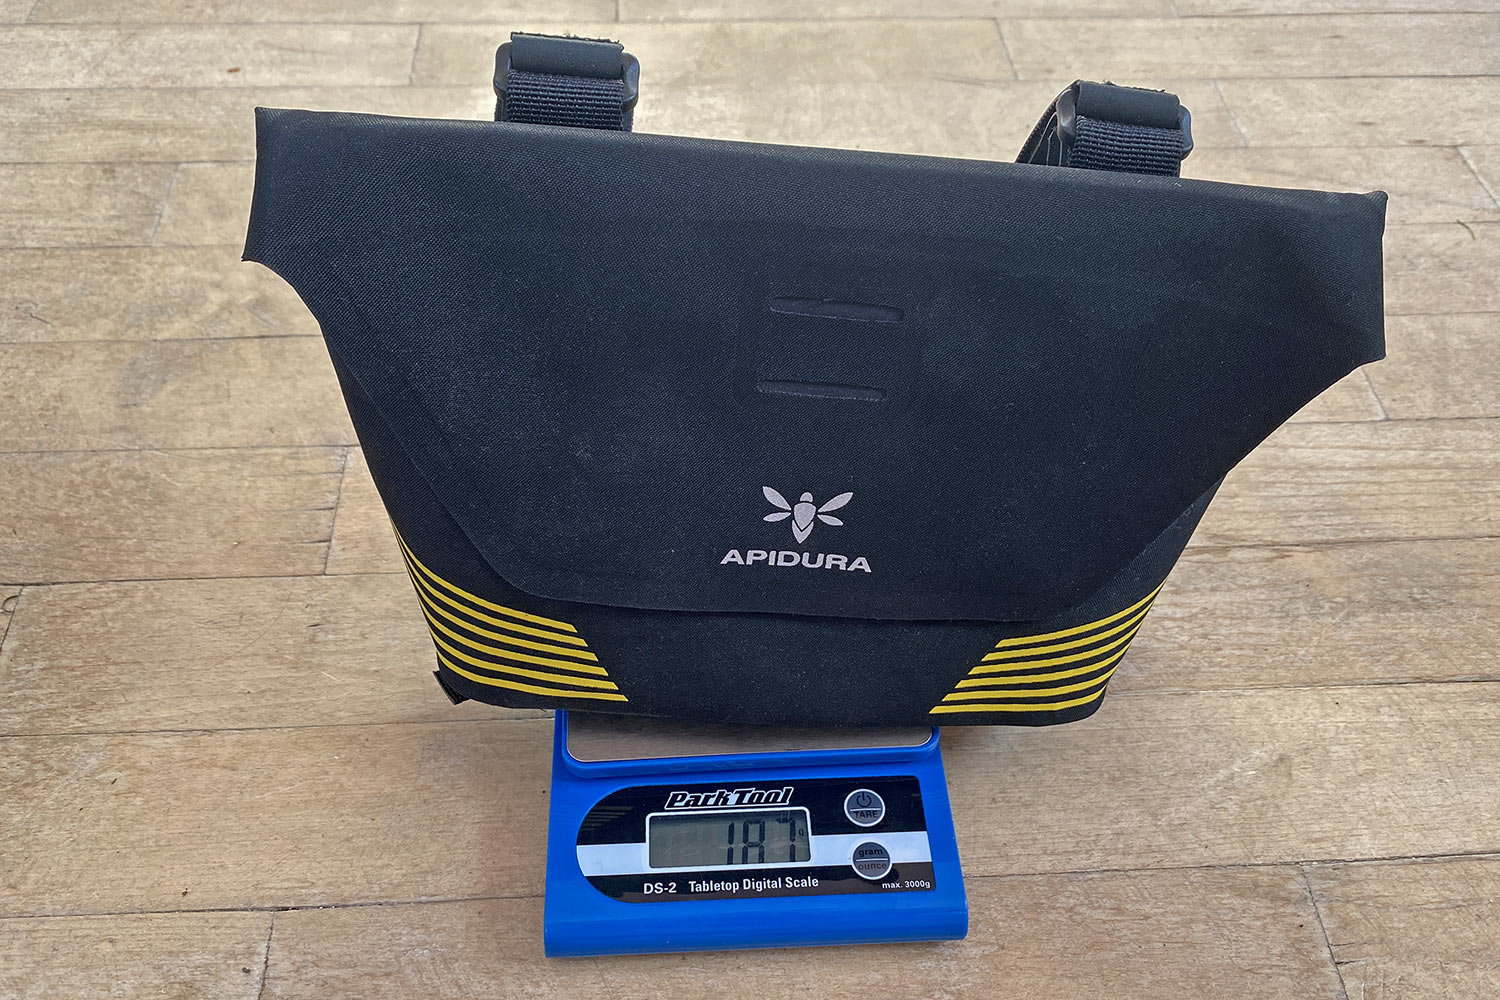 Apidura Racing Handlebar Pack, fast bikepacking mini bar bag review, 187g actual weight